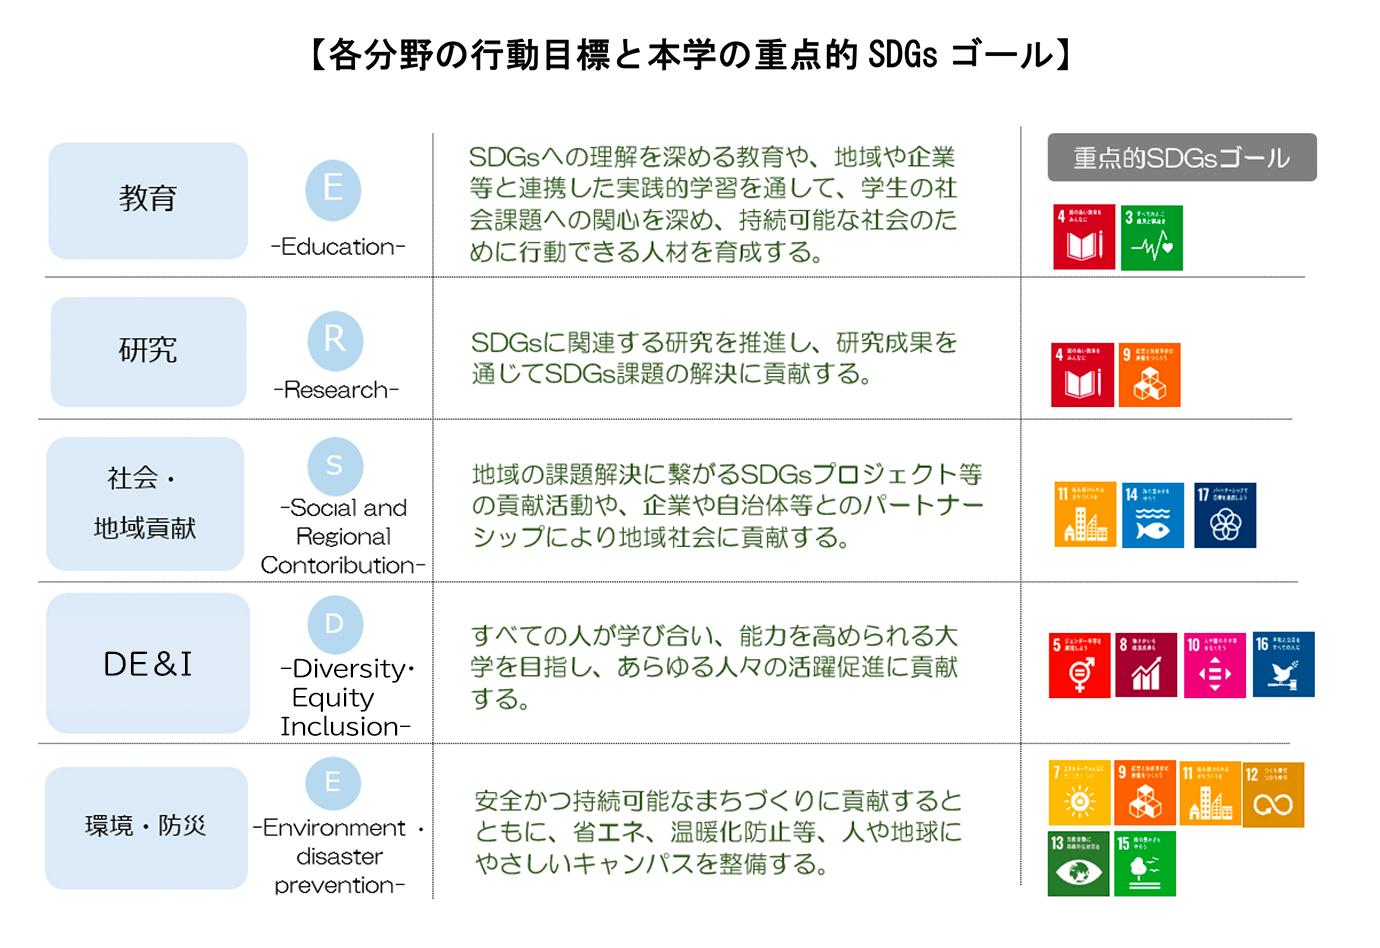 各分野の行動目標と本学の重点的SDGsゴール